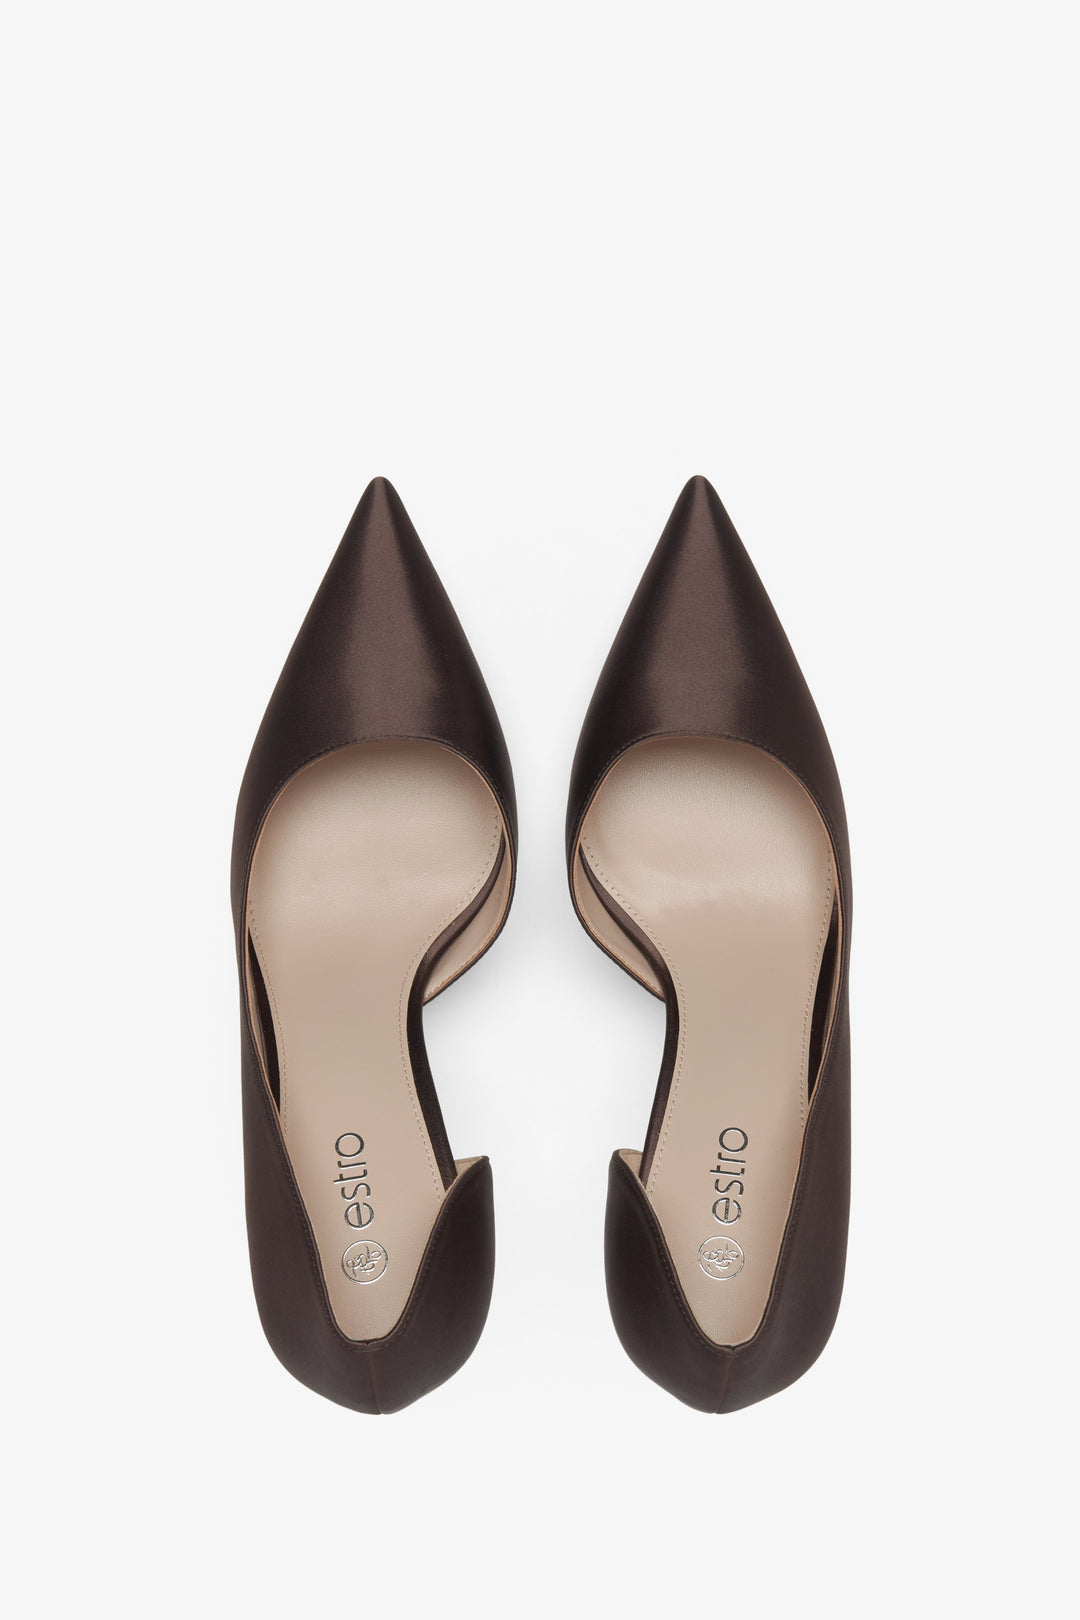 Estro women's satin high heels in dark brown - top view model presentation.